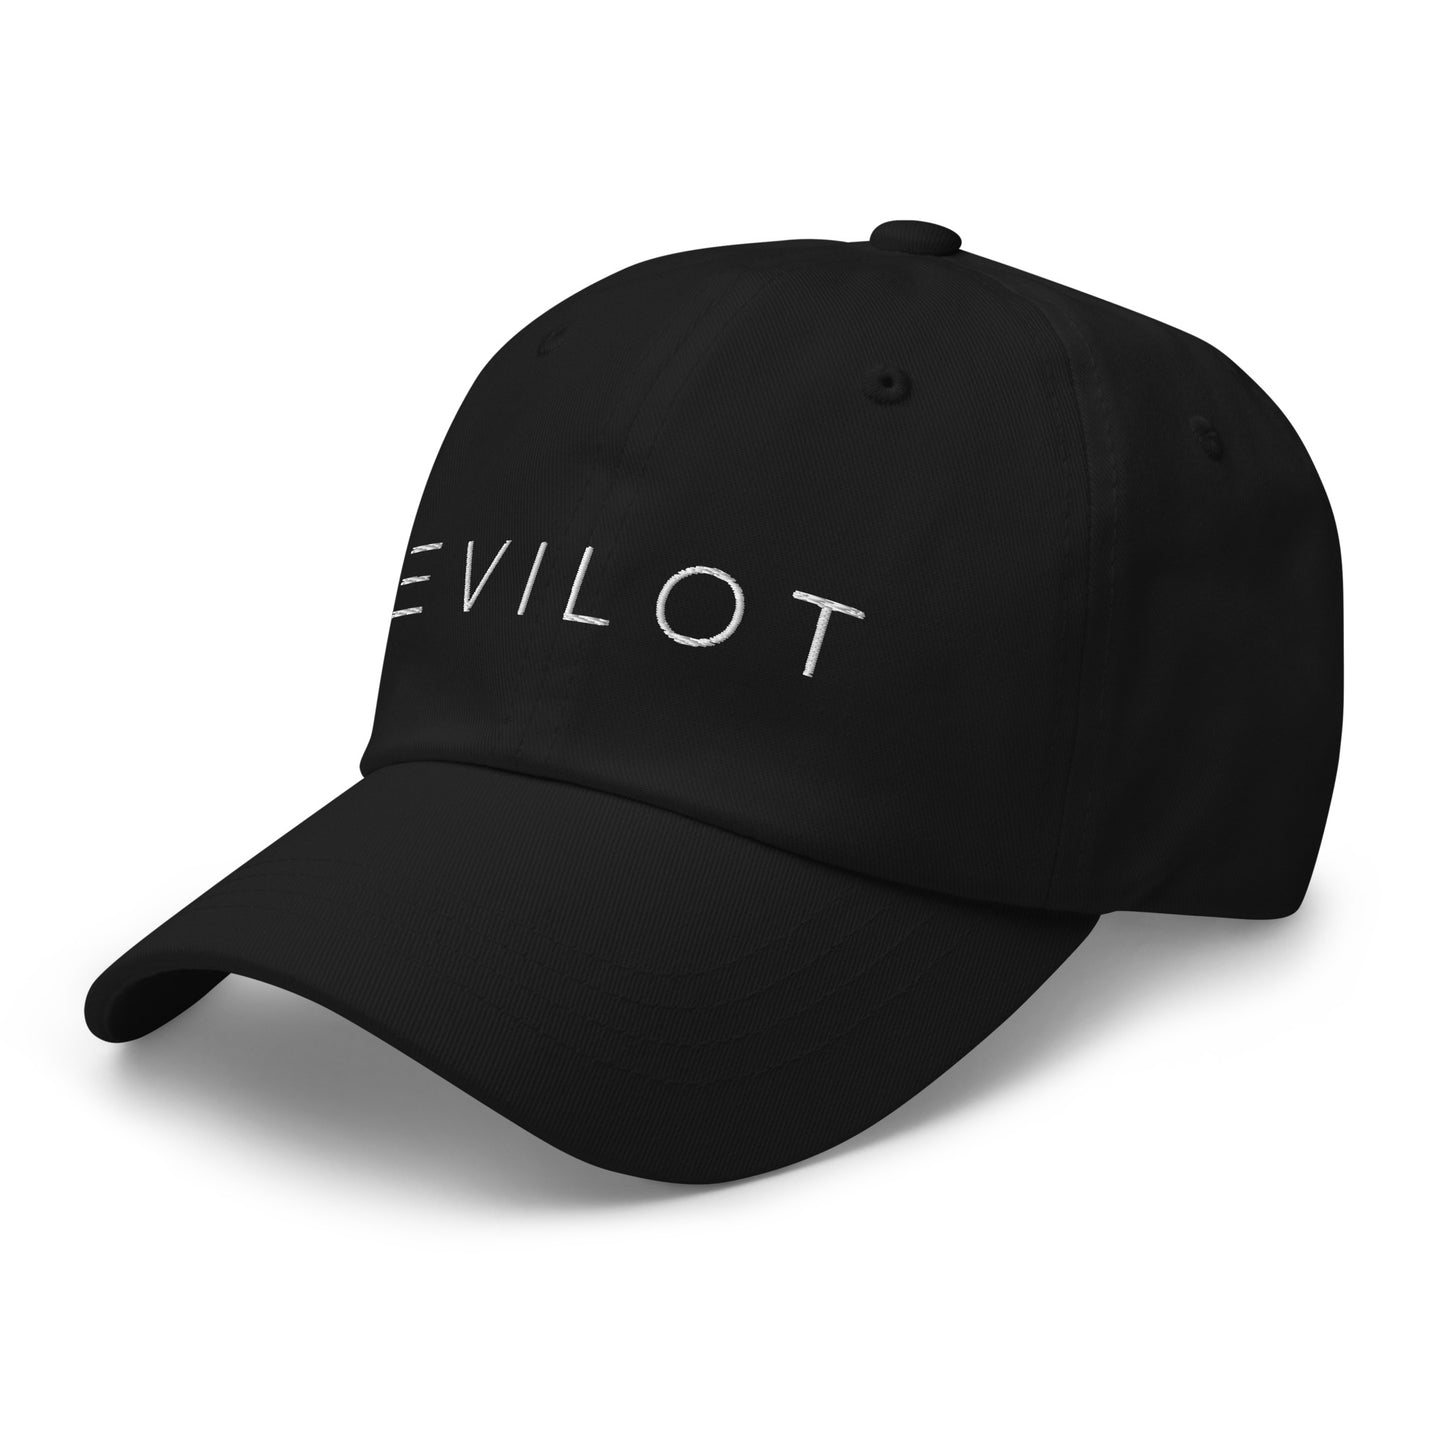 TOLIVE Hat - Black